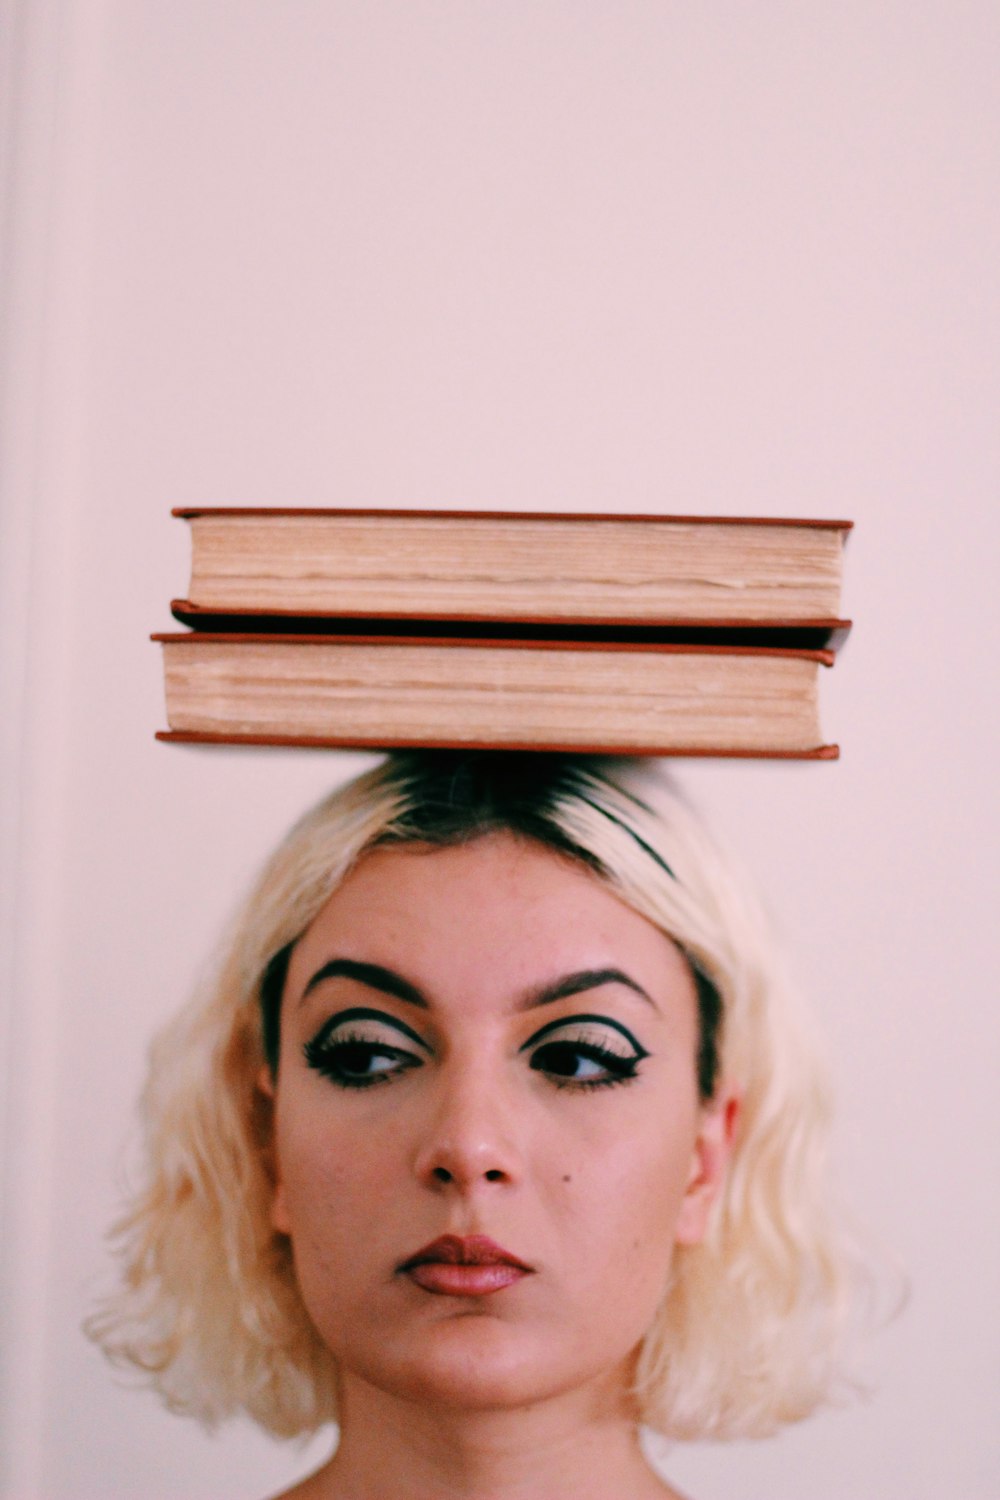 Dois livros em cima da cabeça da mulher